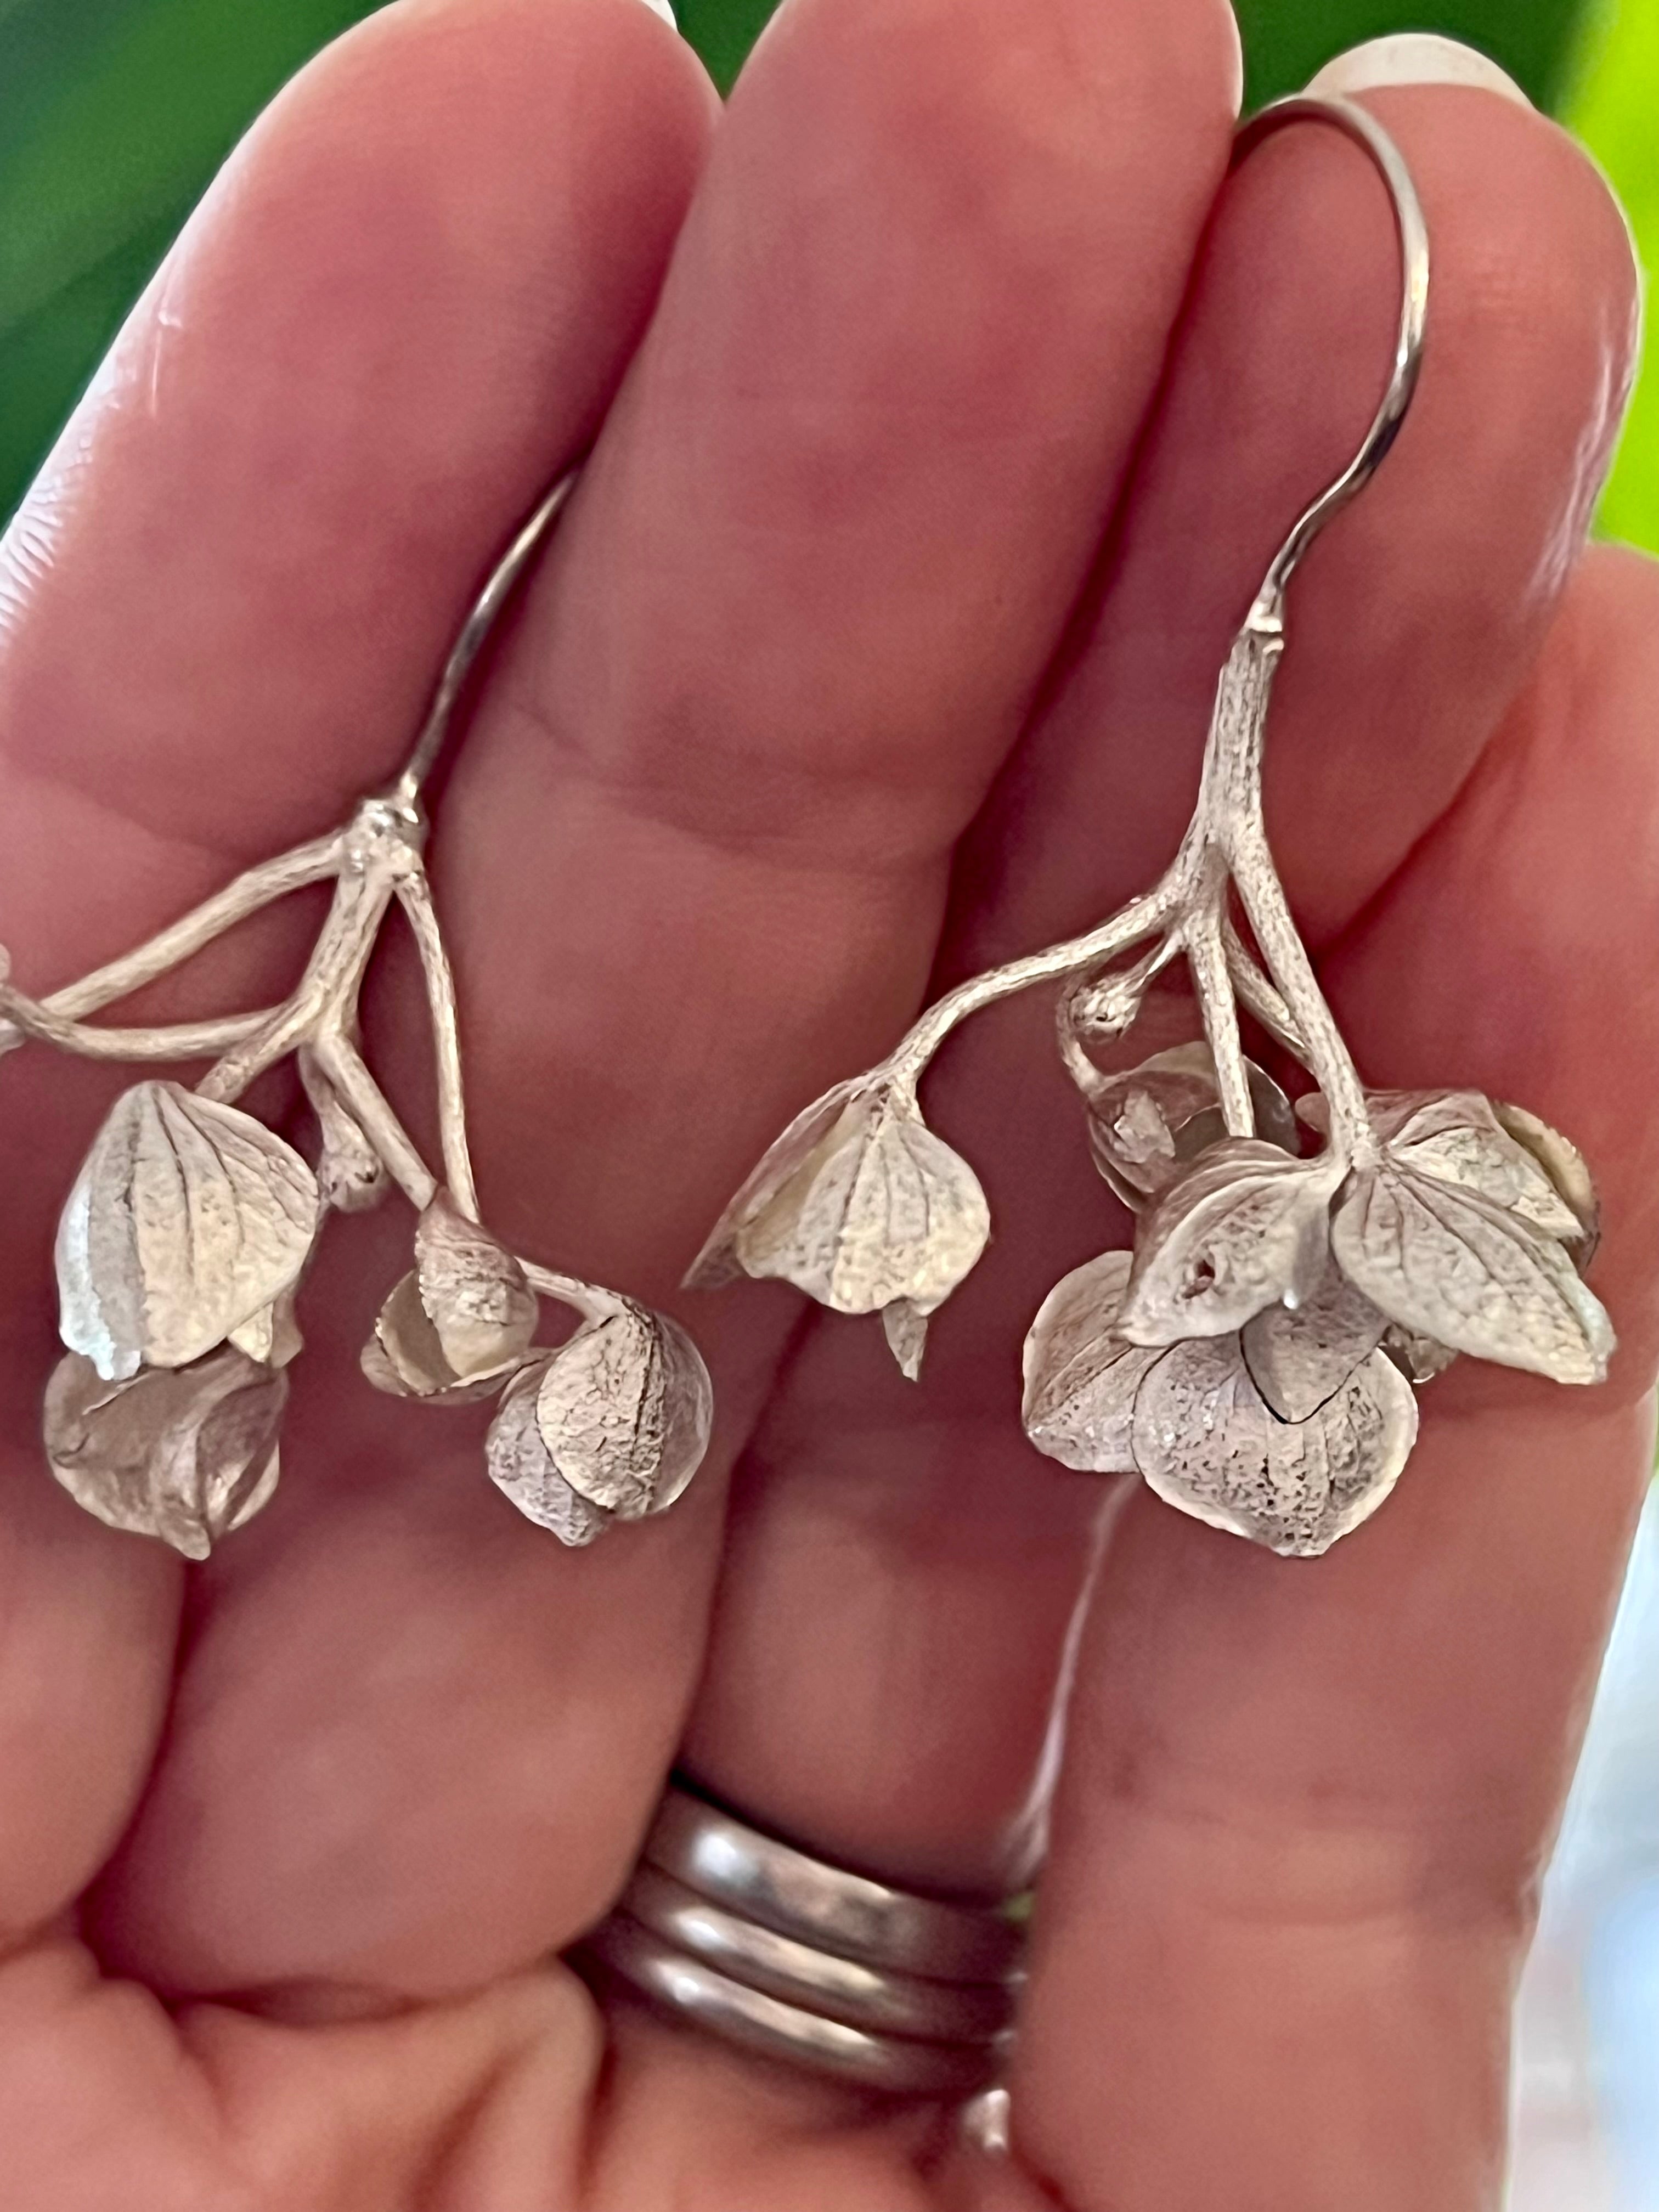 Botanical earrings - hydrangea flowers - silver